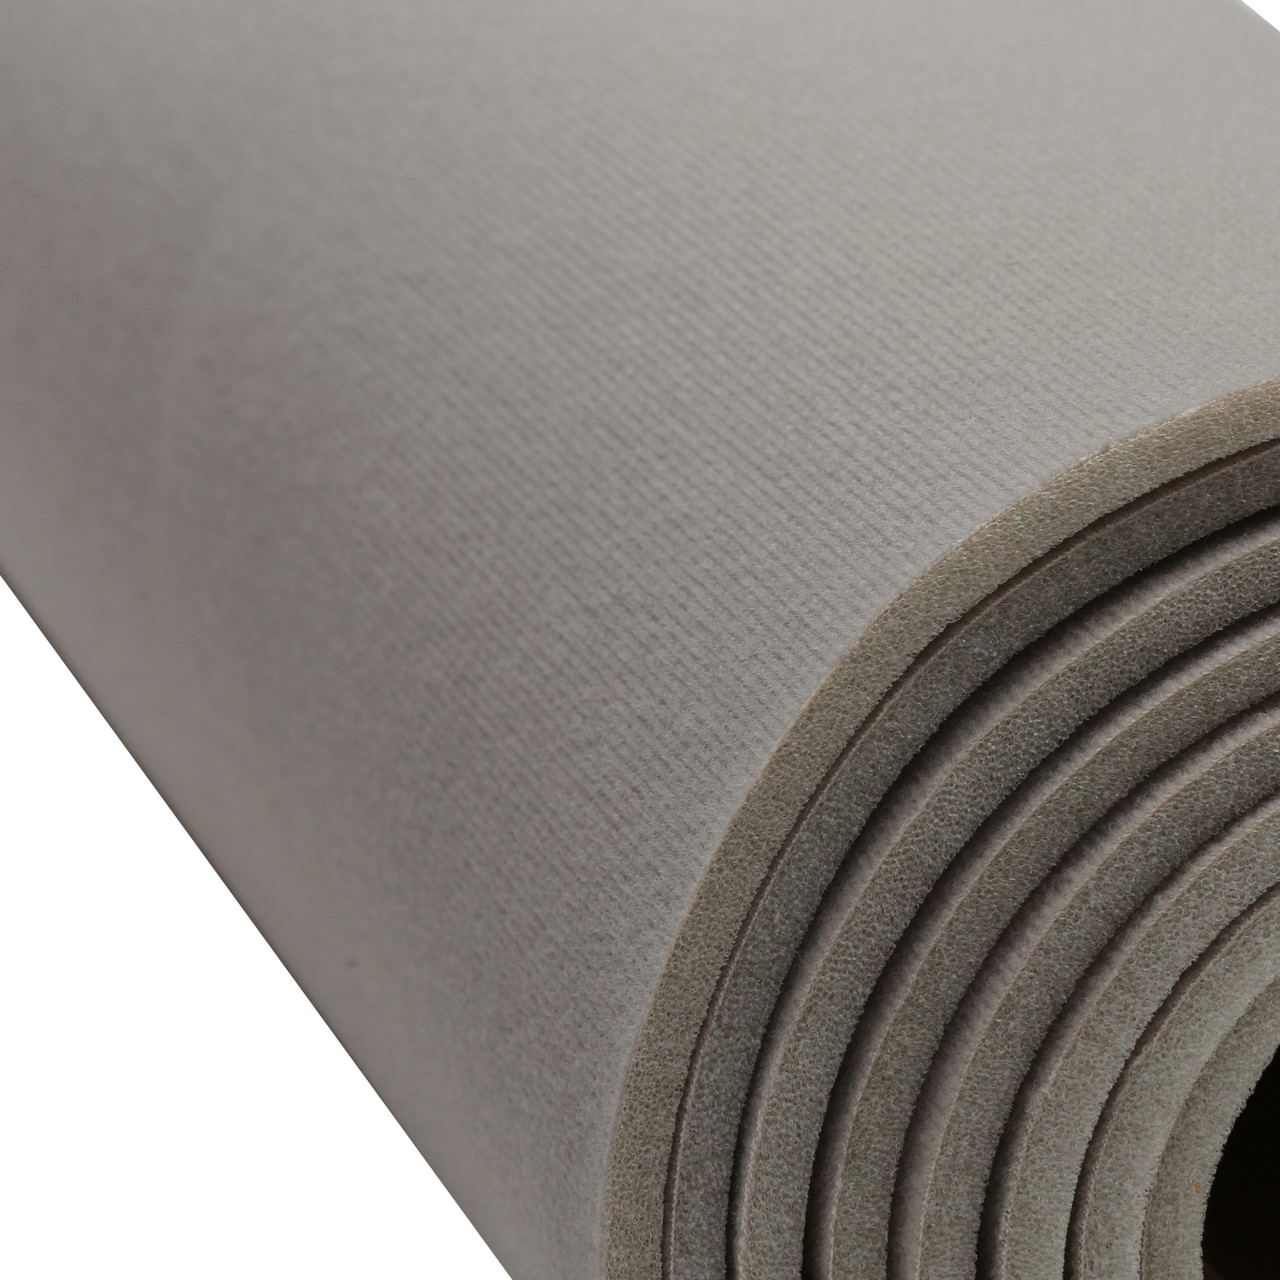 1 Upholstery Foam | 24 Wide | Full Sheet